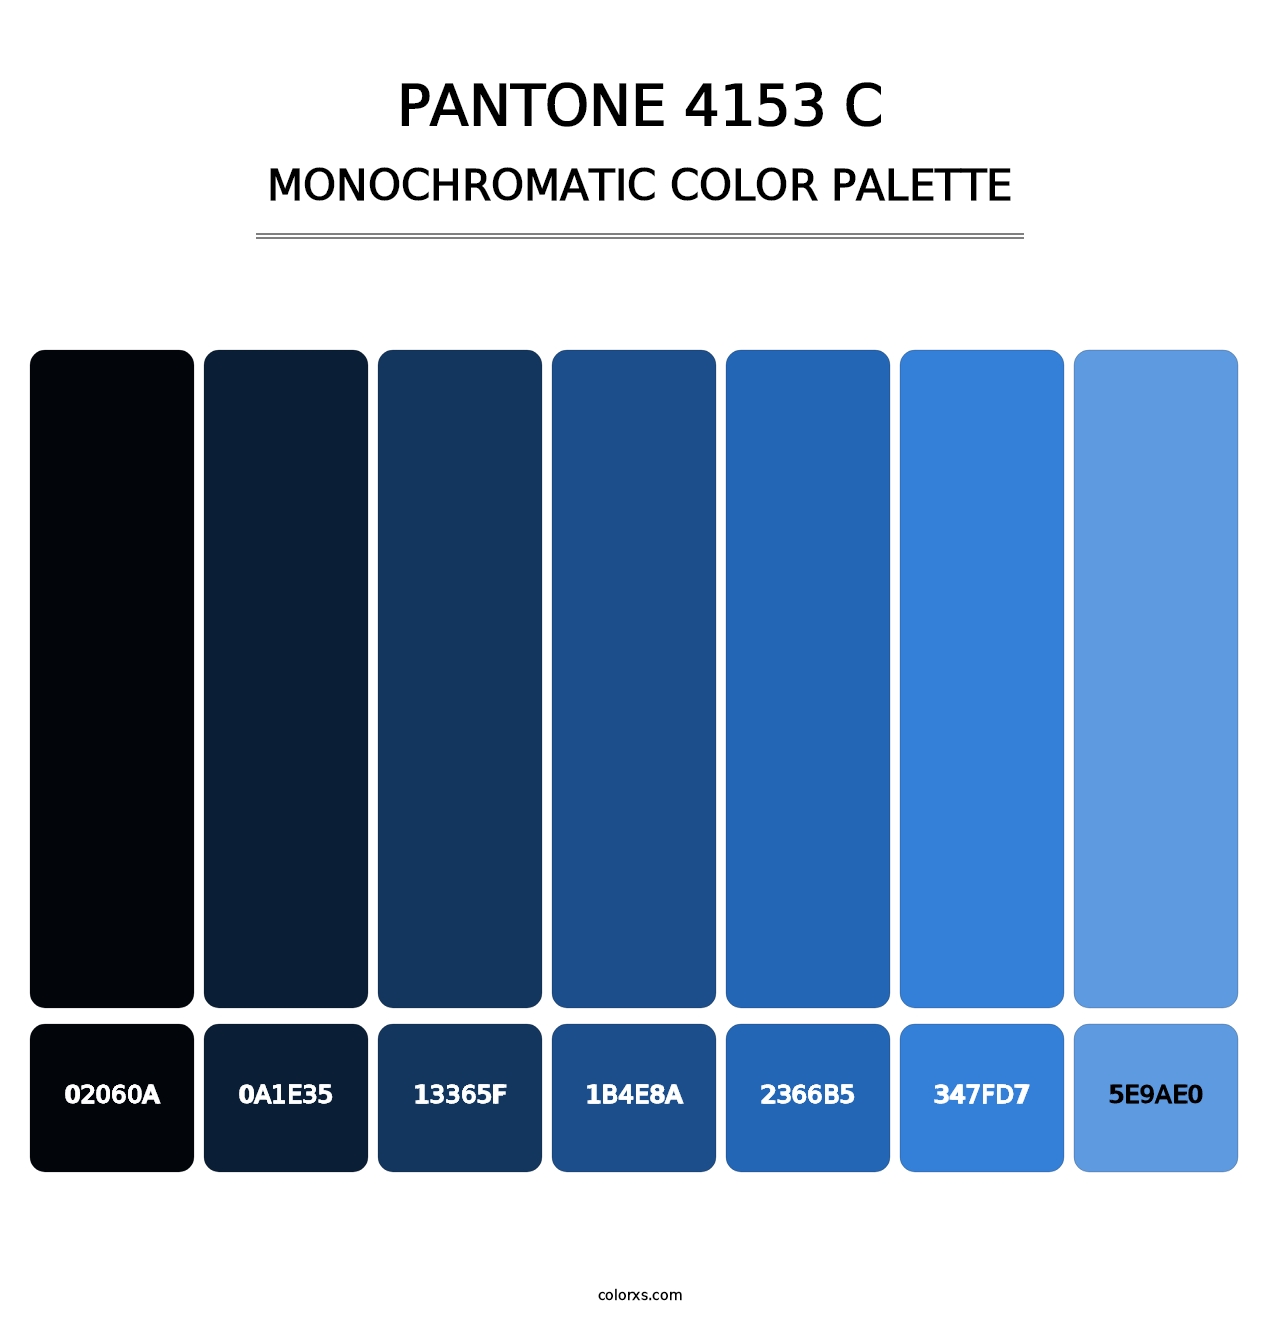 PANTONE 4153 C - Monochromatic Color Palette